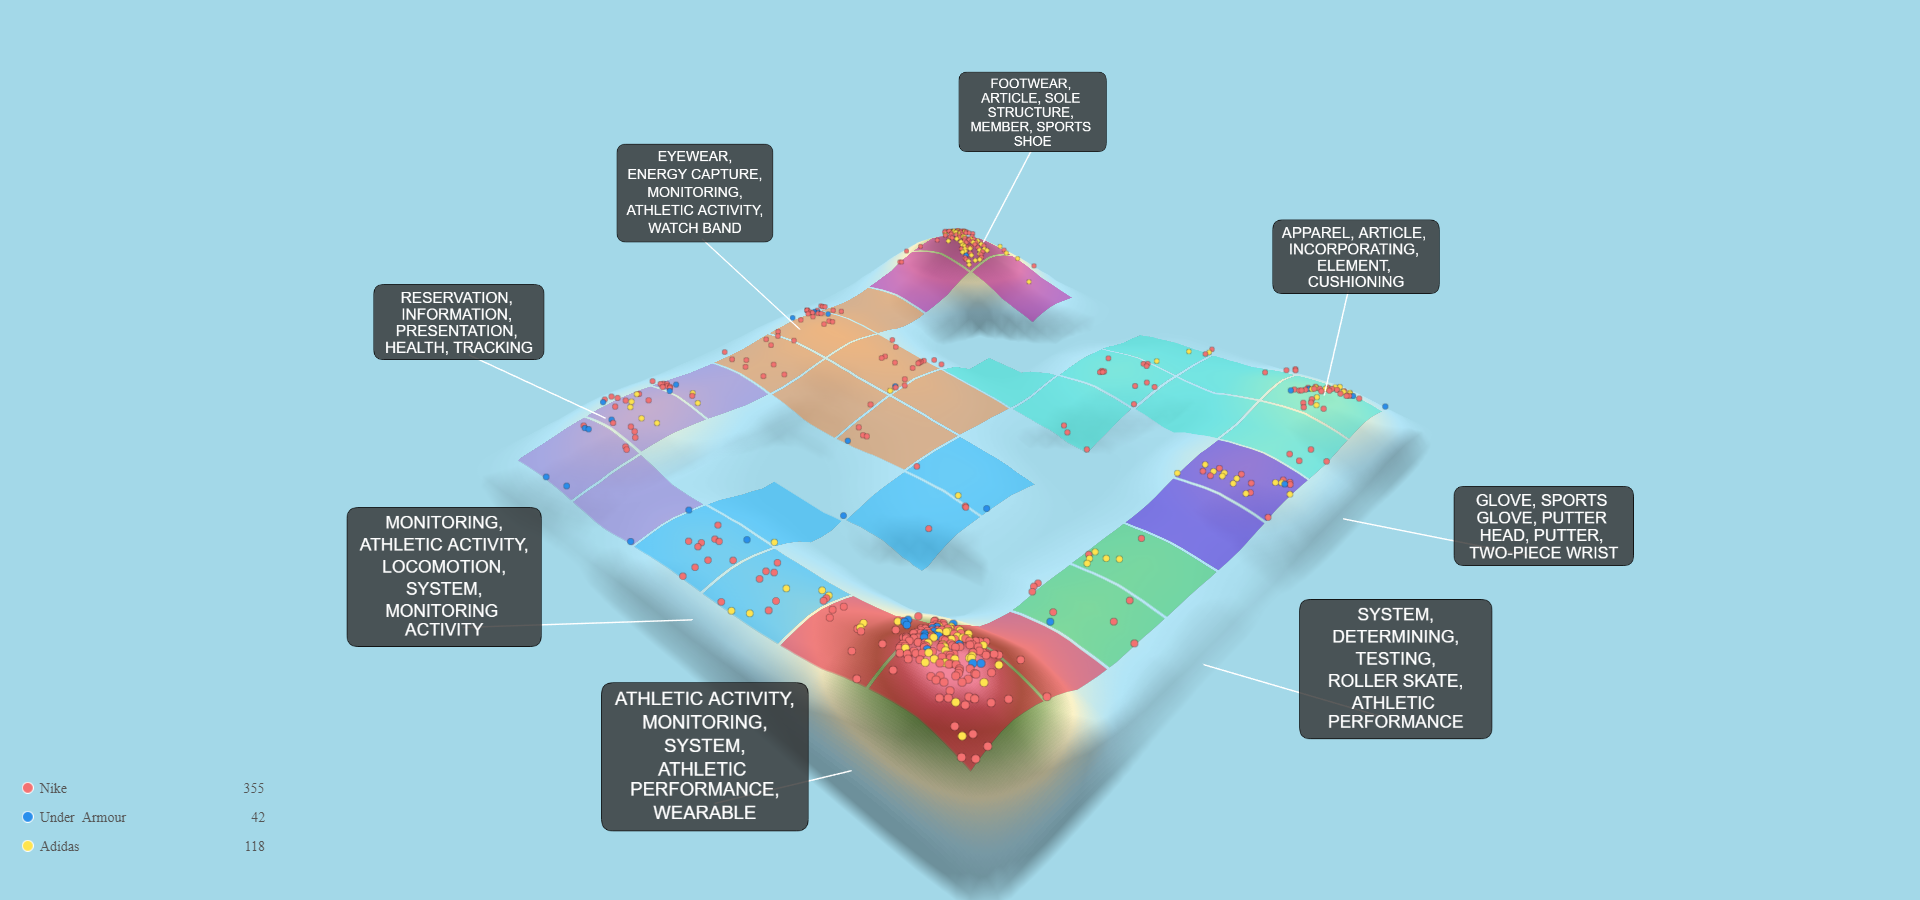 ナイキ アンダーアーマー アディダス 科学特許データ 3D 風景